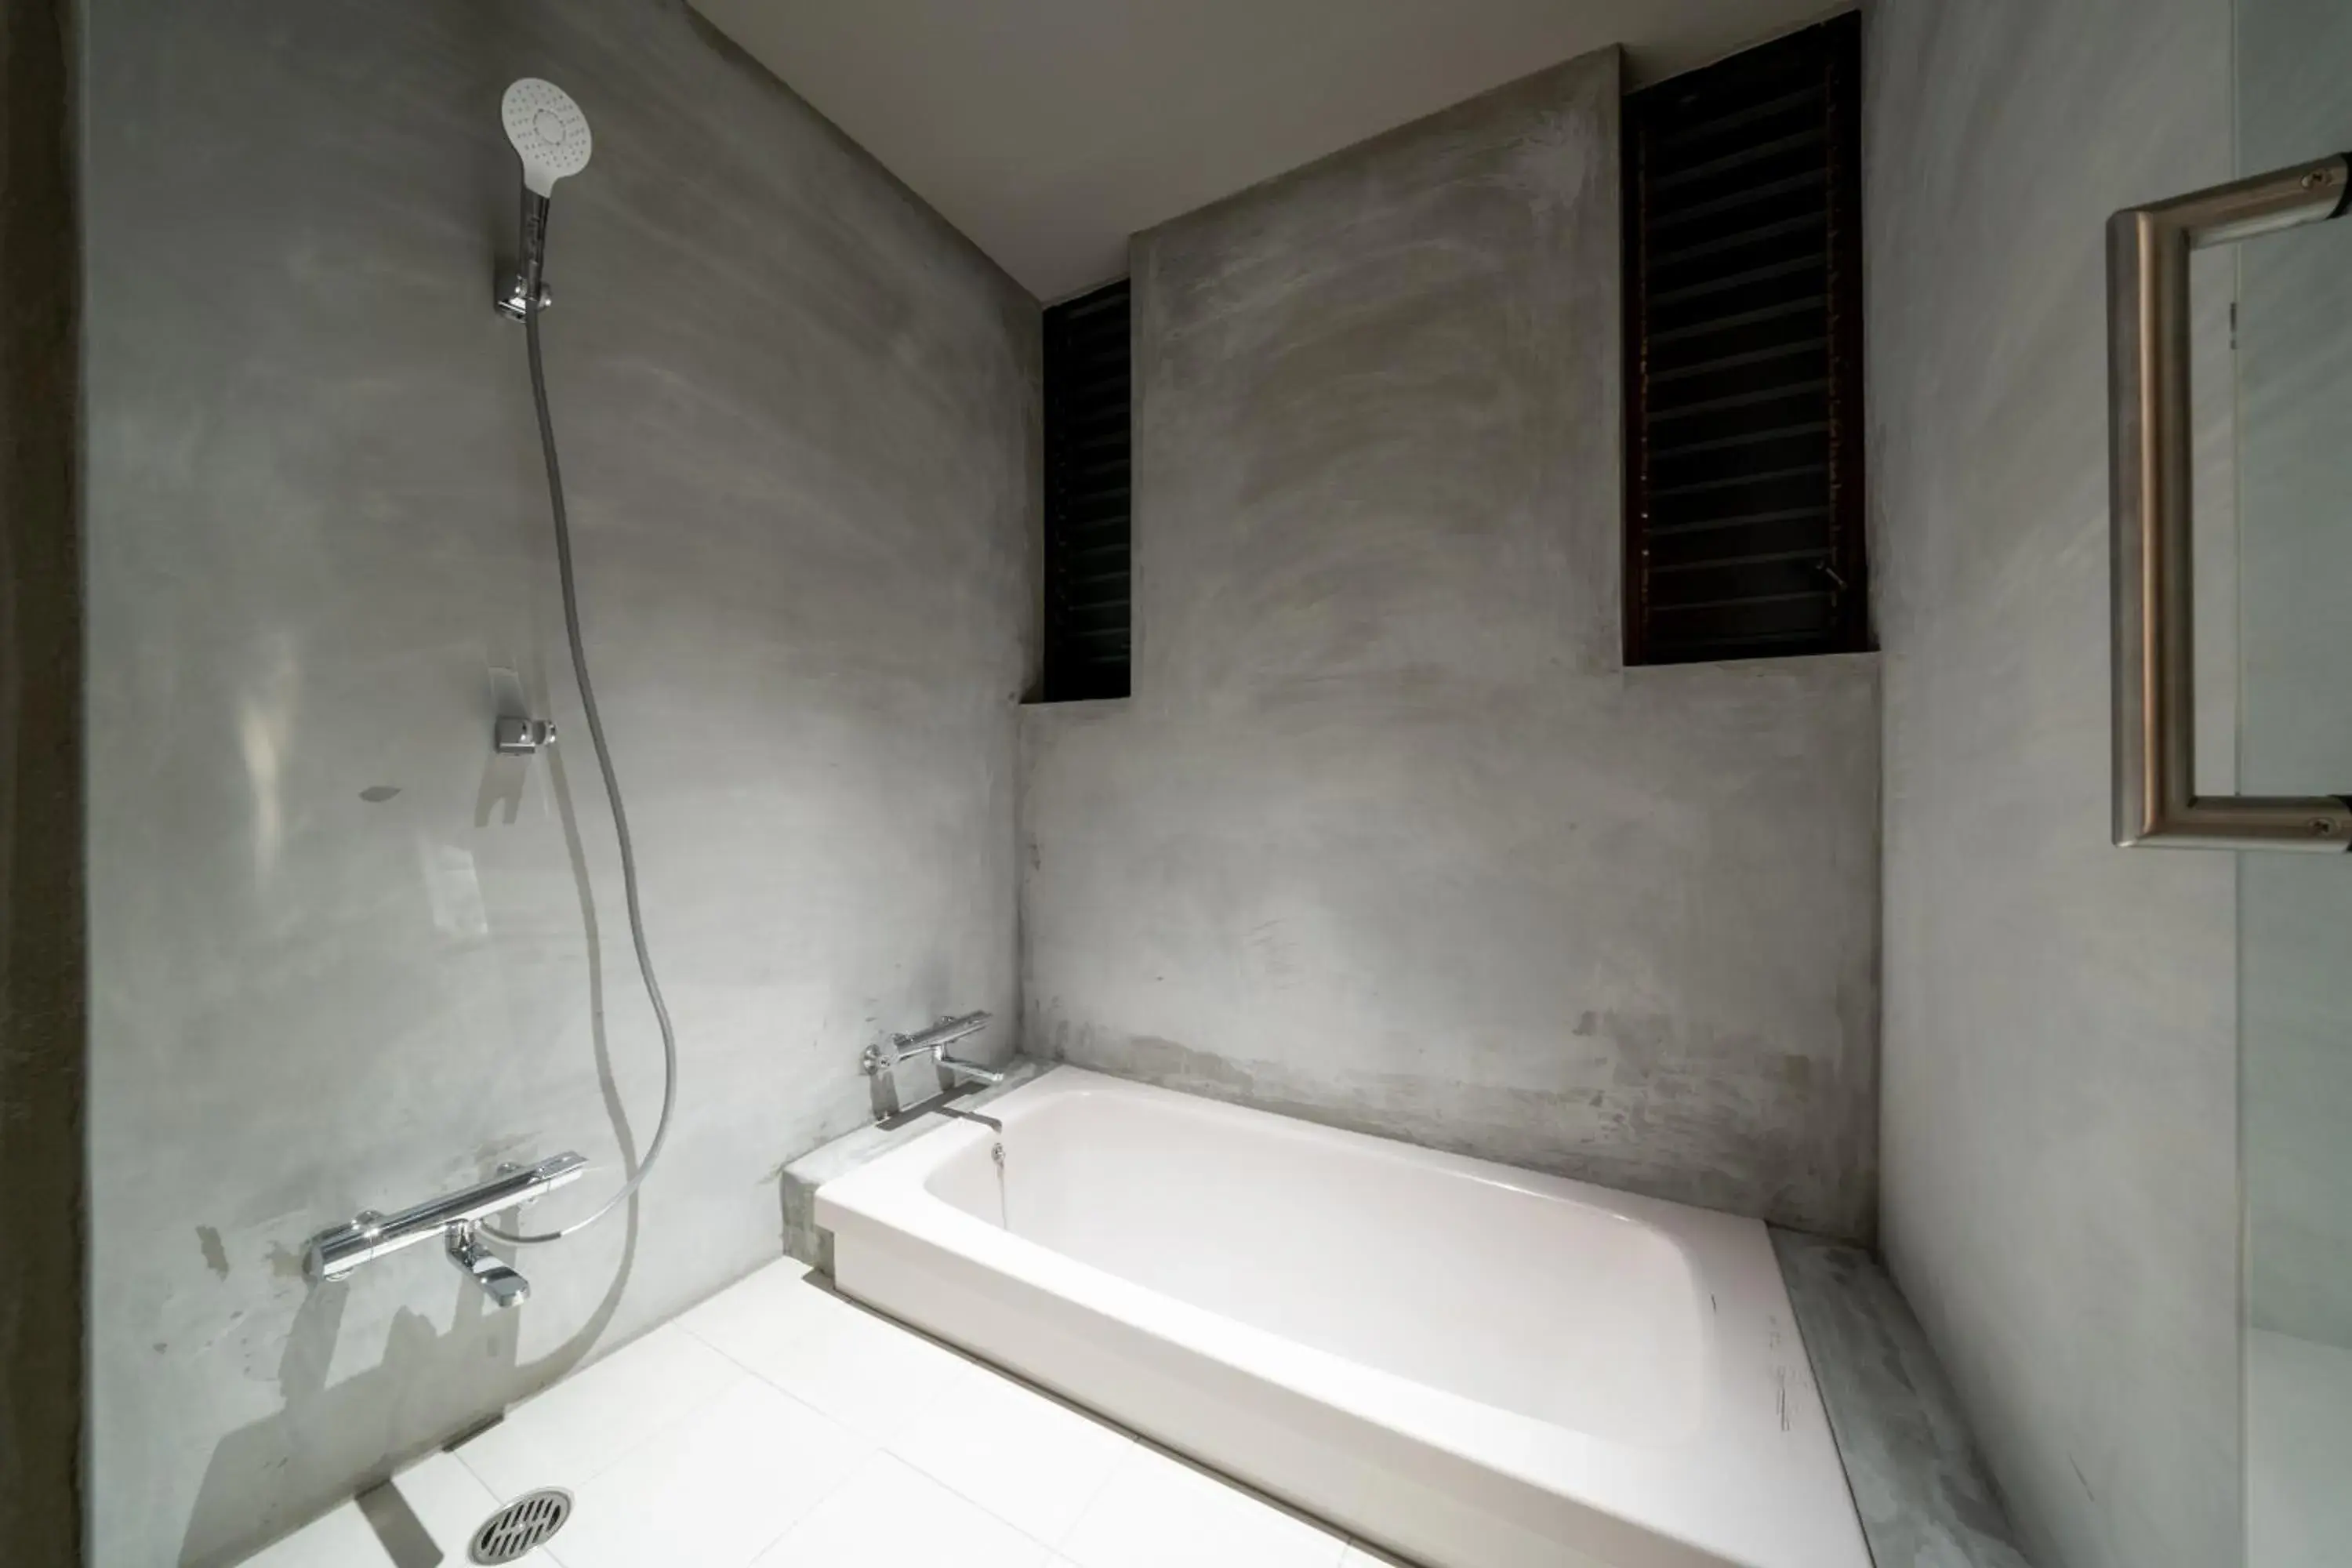 Shower, Bathroom in RYOKAN YAMAZAKI 